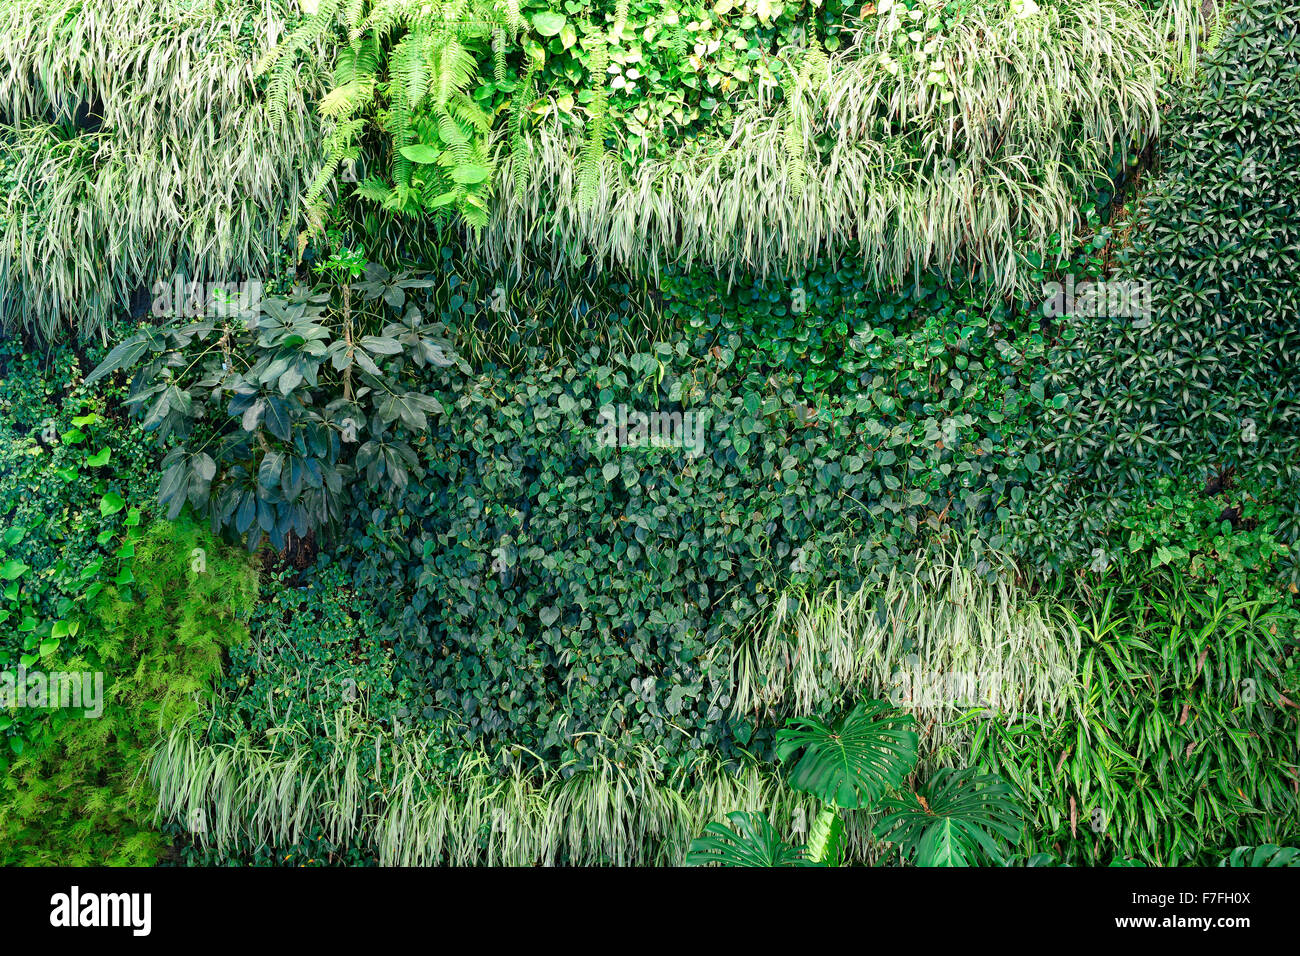 Un mur vivant contexte montrant la croissance luxuriante de plantes couvrant tout un mur Banque D'Images